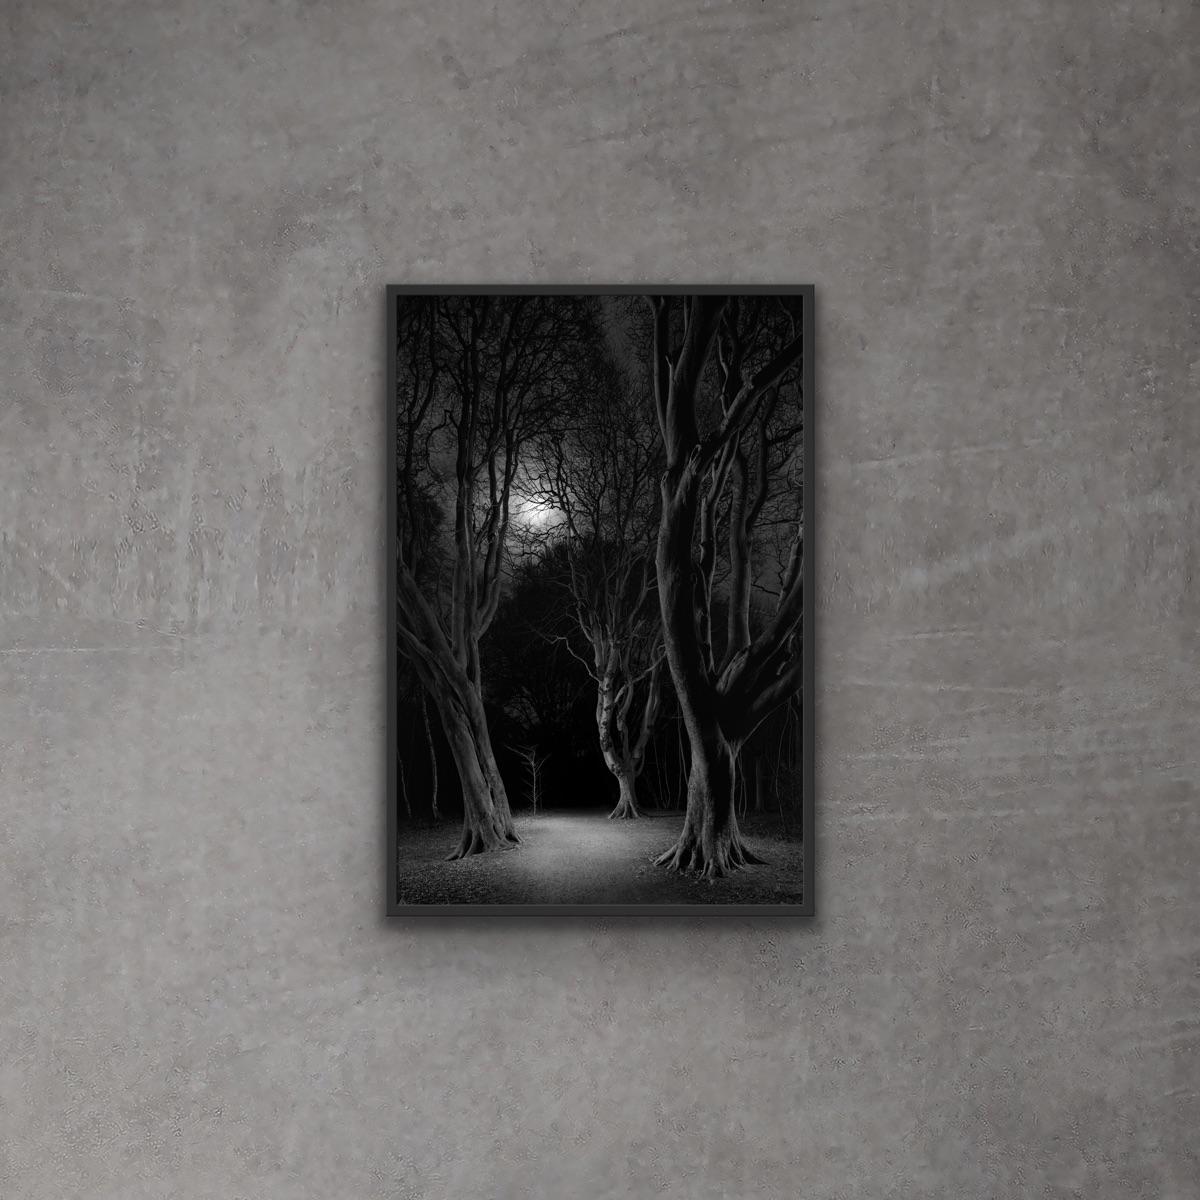 Schwarzes und weißes Mondlicht hinter den Bäumen und der Weg im Wald bei Nacht (Zeitgenössisch), Photograph, von Jasper Goodall